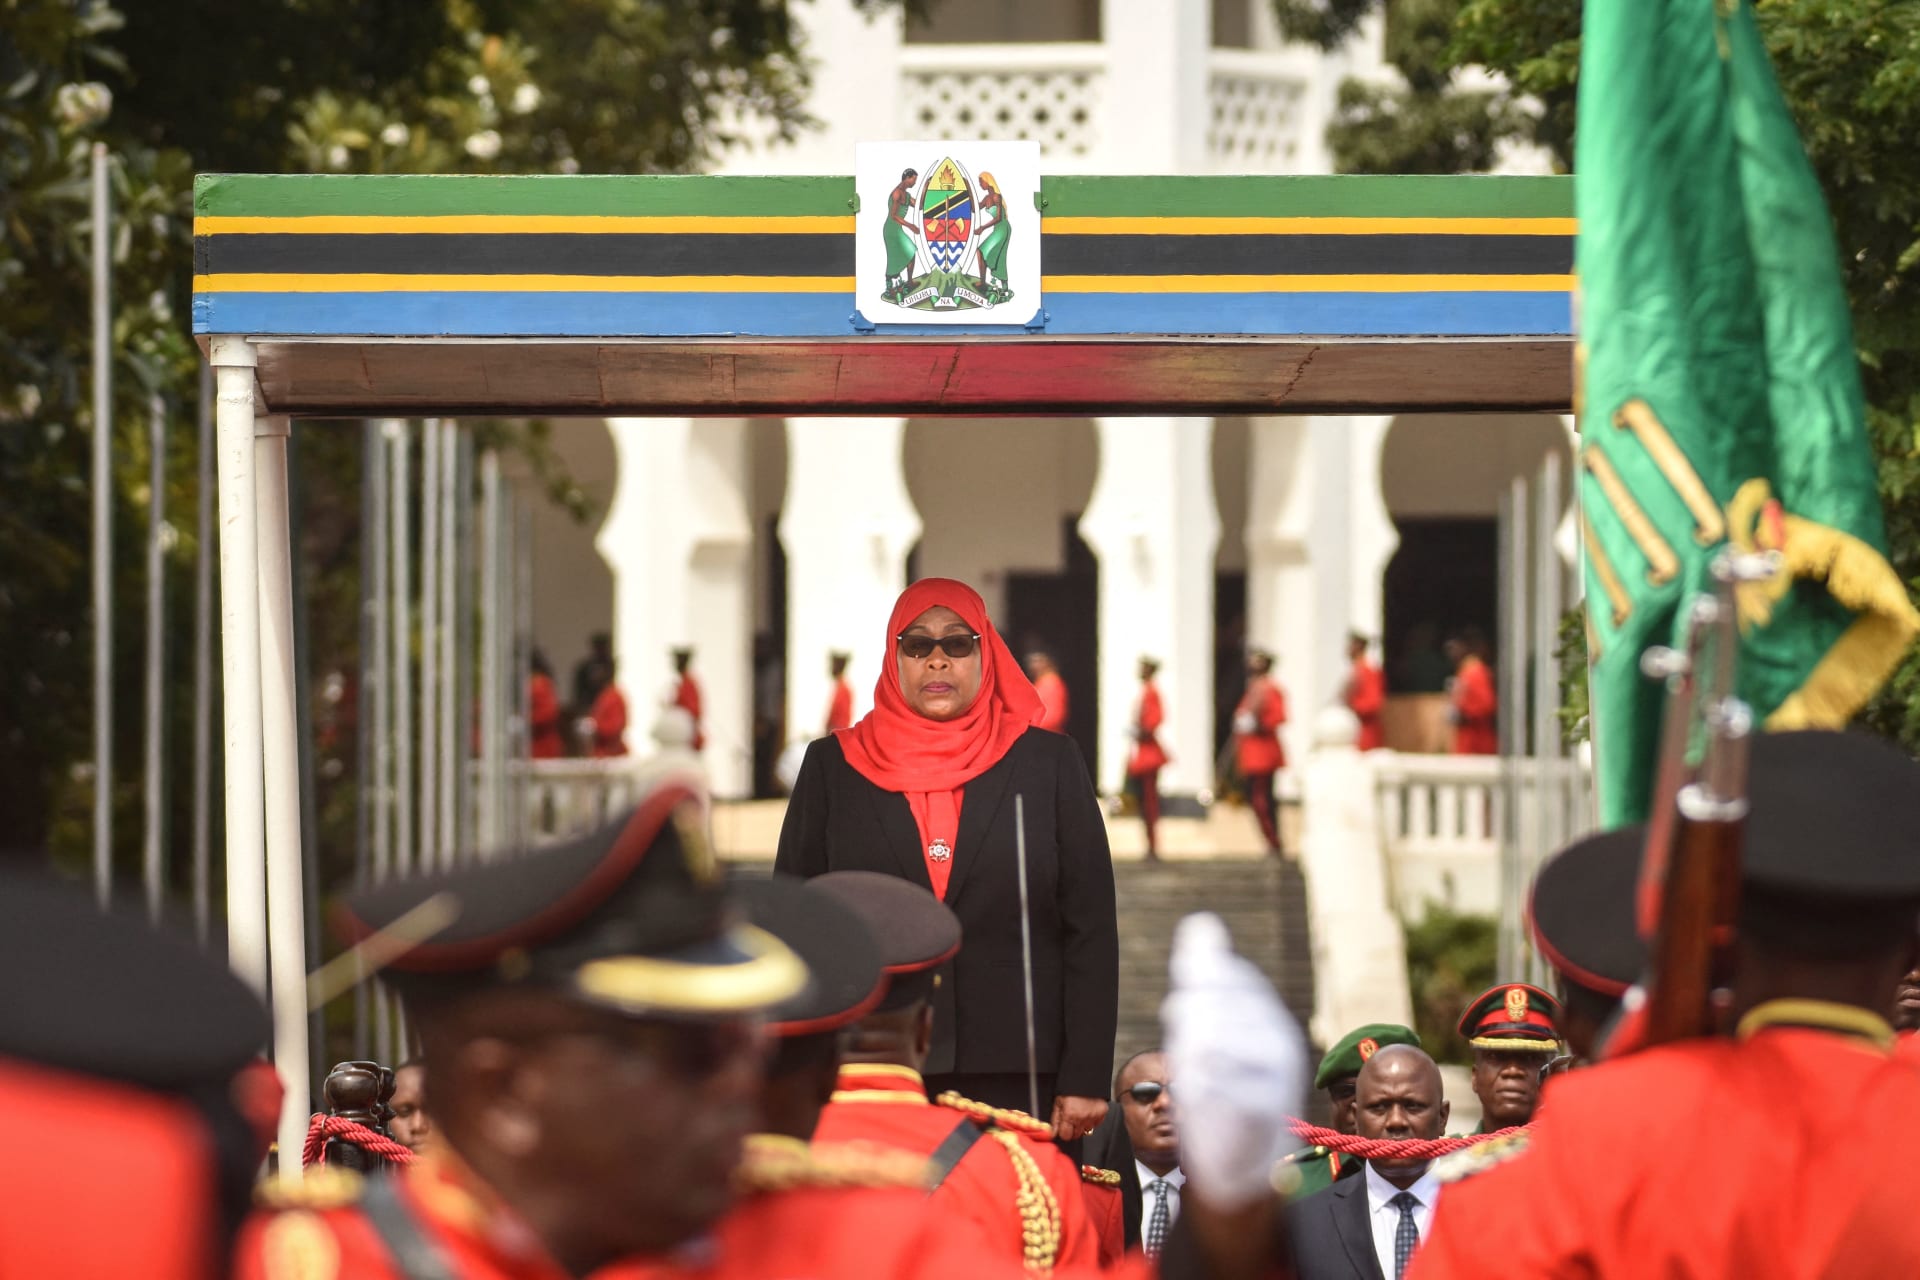 سامية صلوحي.. من تكون أول رئيسة مسلمة في تاريخ تنزانيا وشرق إفريقيا؟